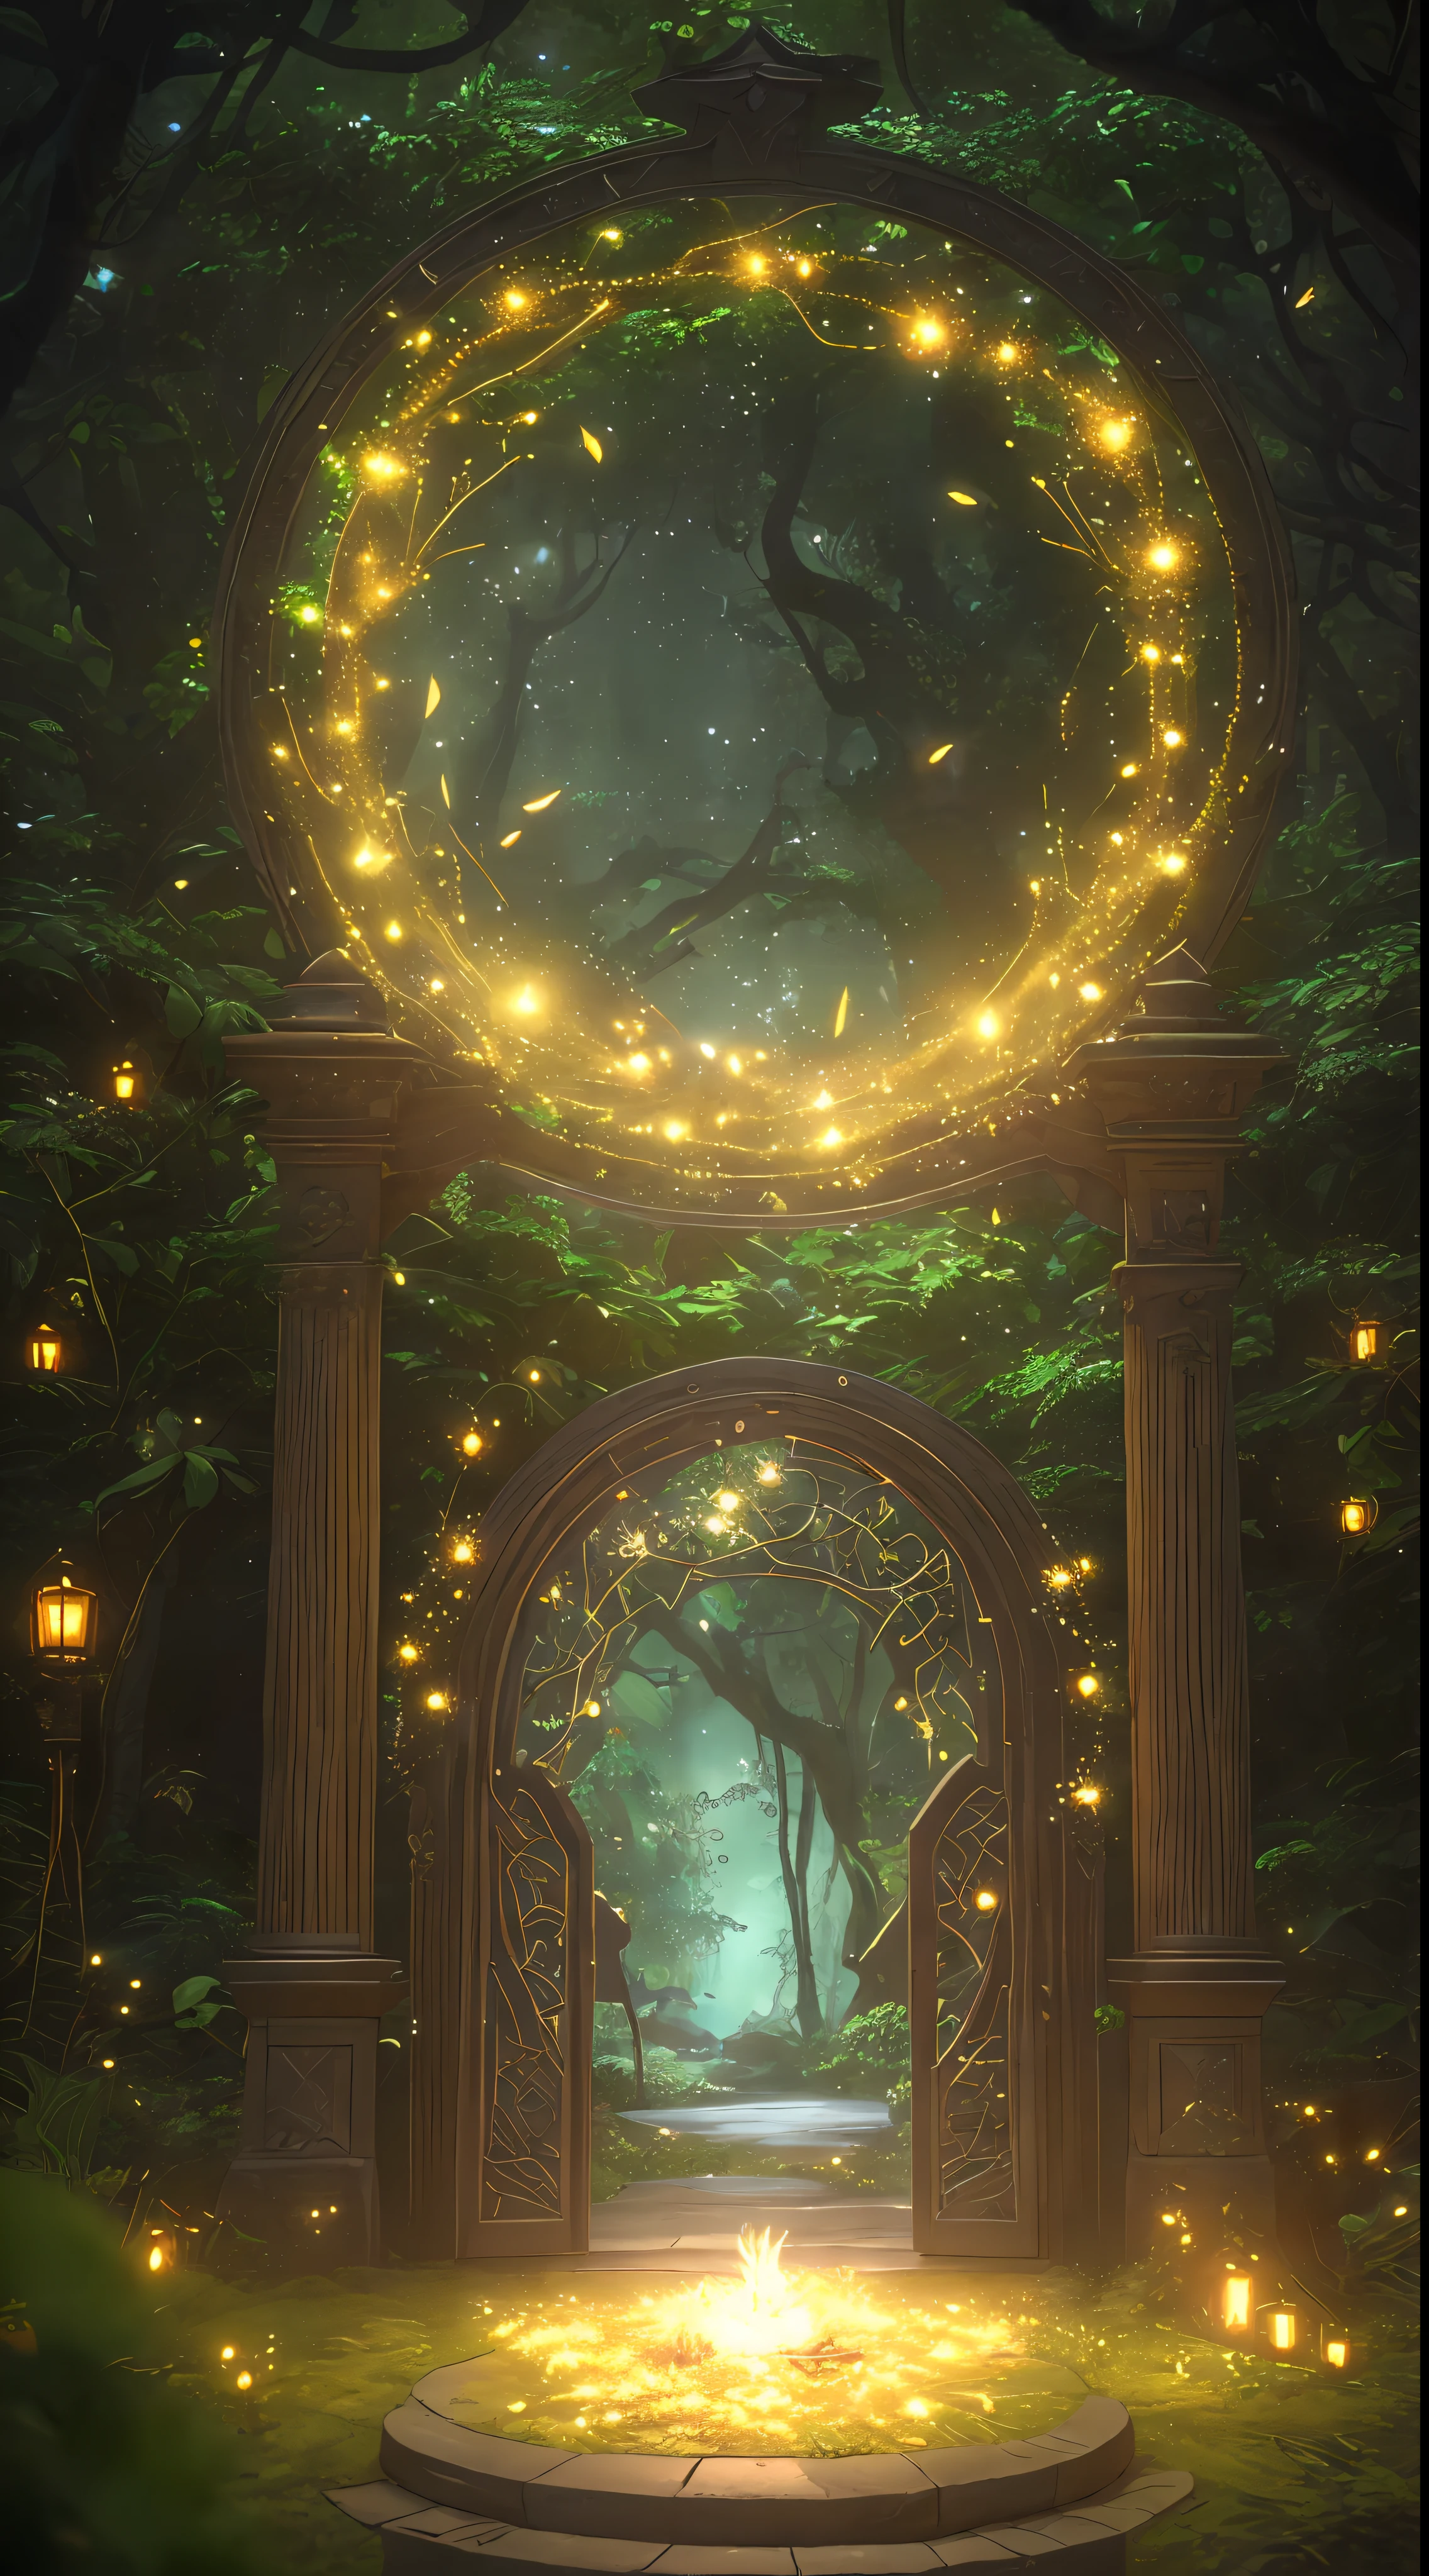 (디지털 아트워크:1.3) ~의 (스케치됨:1.1) octane render ~의 a mysterious dense forest with a large (마법 같은:1.2) 문 (문:1.3) 영원한 나라로, The 문 frame is designed in a round shape, surrounded by delicate 나뭇잎 and branches, with 반딧불이 and 불타는 듯한 빛깔ing 입자 효과, (UI 인터페이스 프레임 디자인), (자연 요소), (정글 테마), (정사각형), (나뭇잎) , (나뭇가지), (반딧불이), 나비, (delicate 나뭇잎), (불타는 듯한 빛깔), (입자 효과, 복잡한 디테일을 가볍게 새겨보세요, (가벼운 입자:1.2), (게임 컨셉:1.3), (depth ~의 field:1.3), 전역 조명,매우 상세한,아트스테이션의 트렌드.